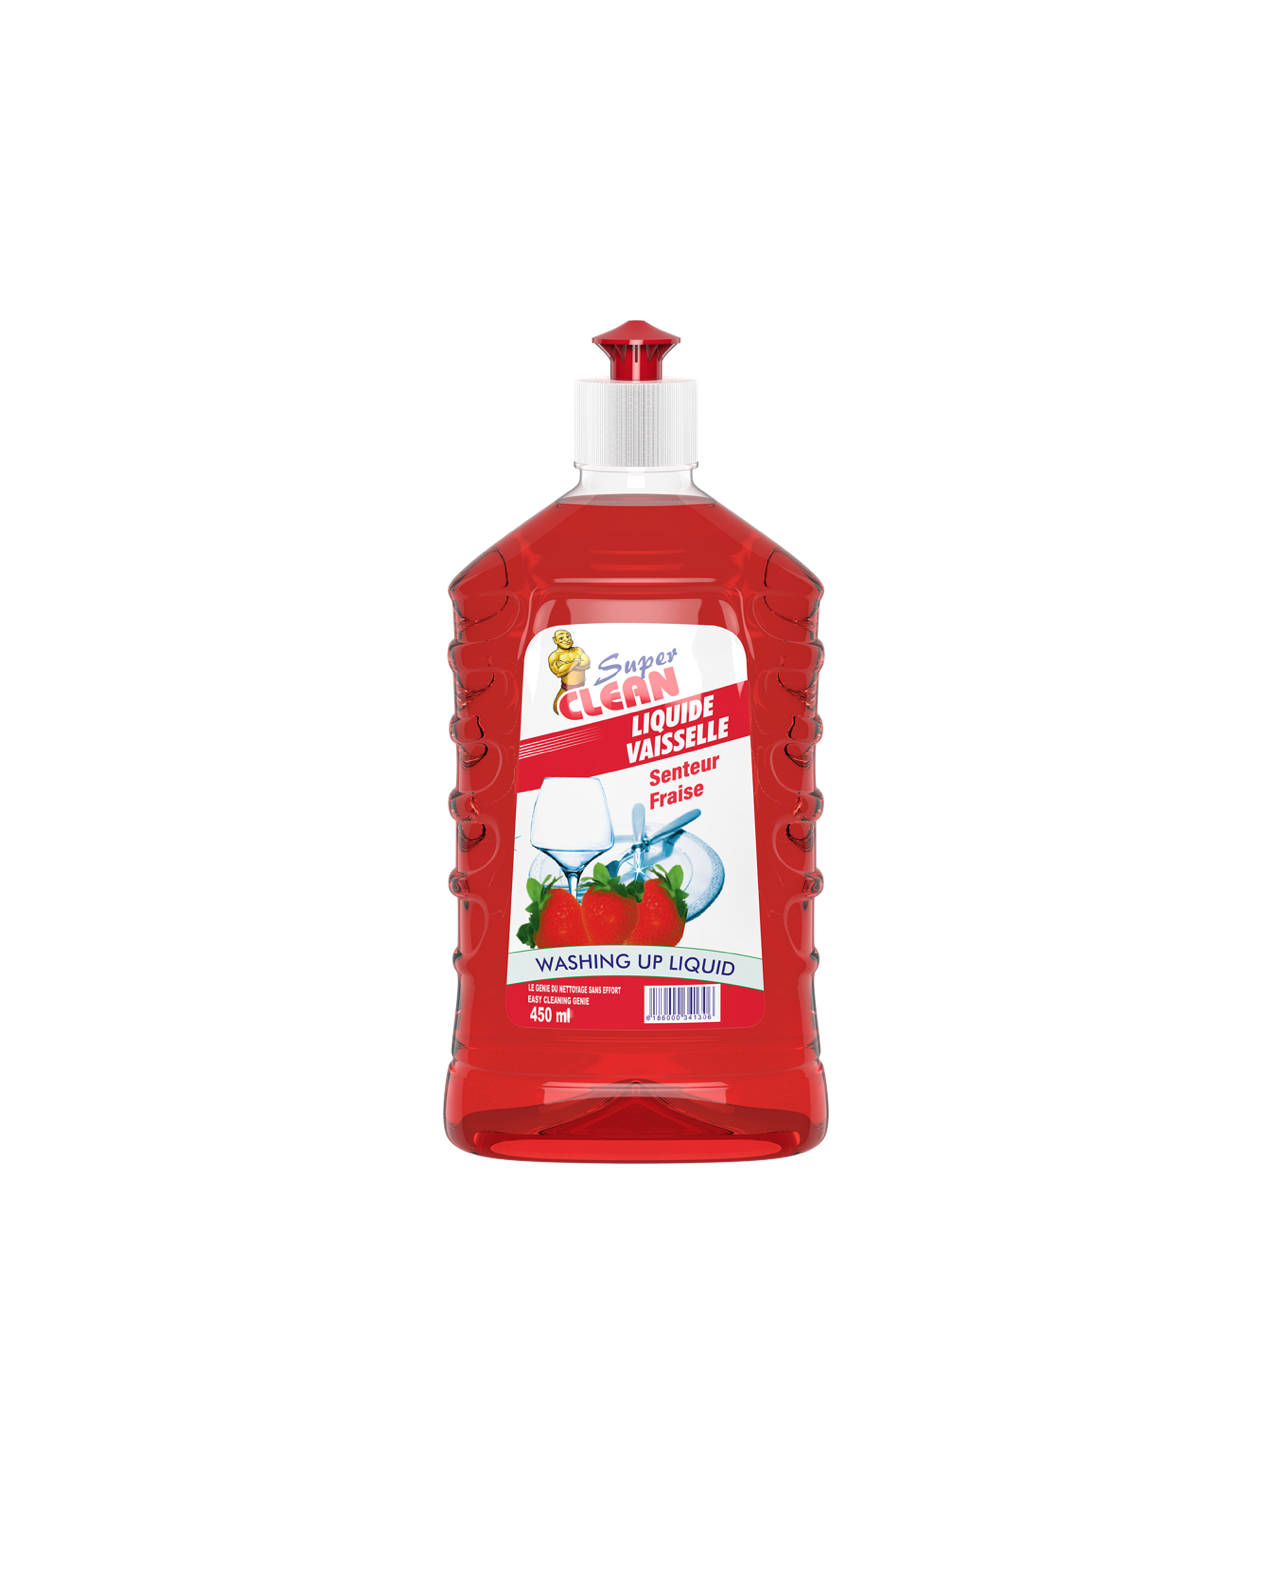 SUPER CLEAN_Liquide Vaisselle Fraise 450ml_Siprochim